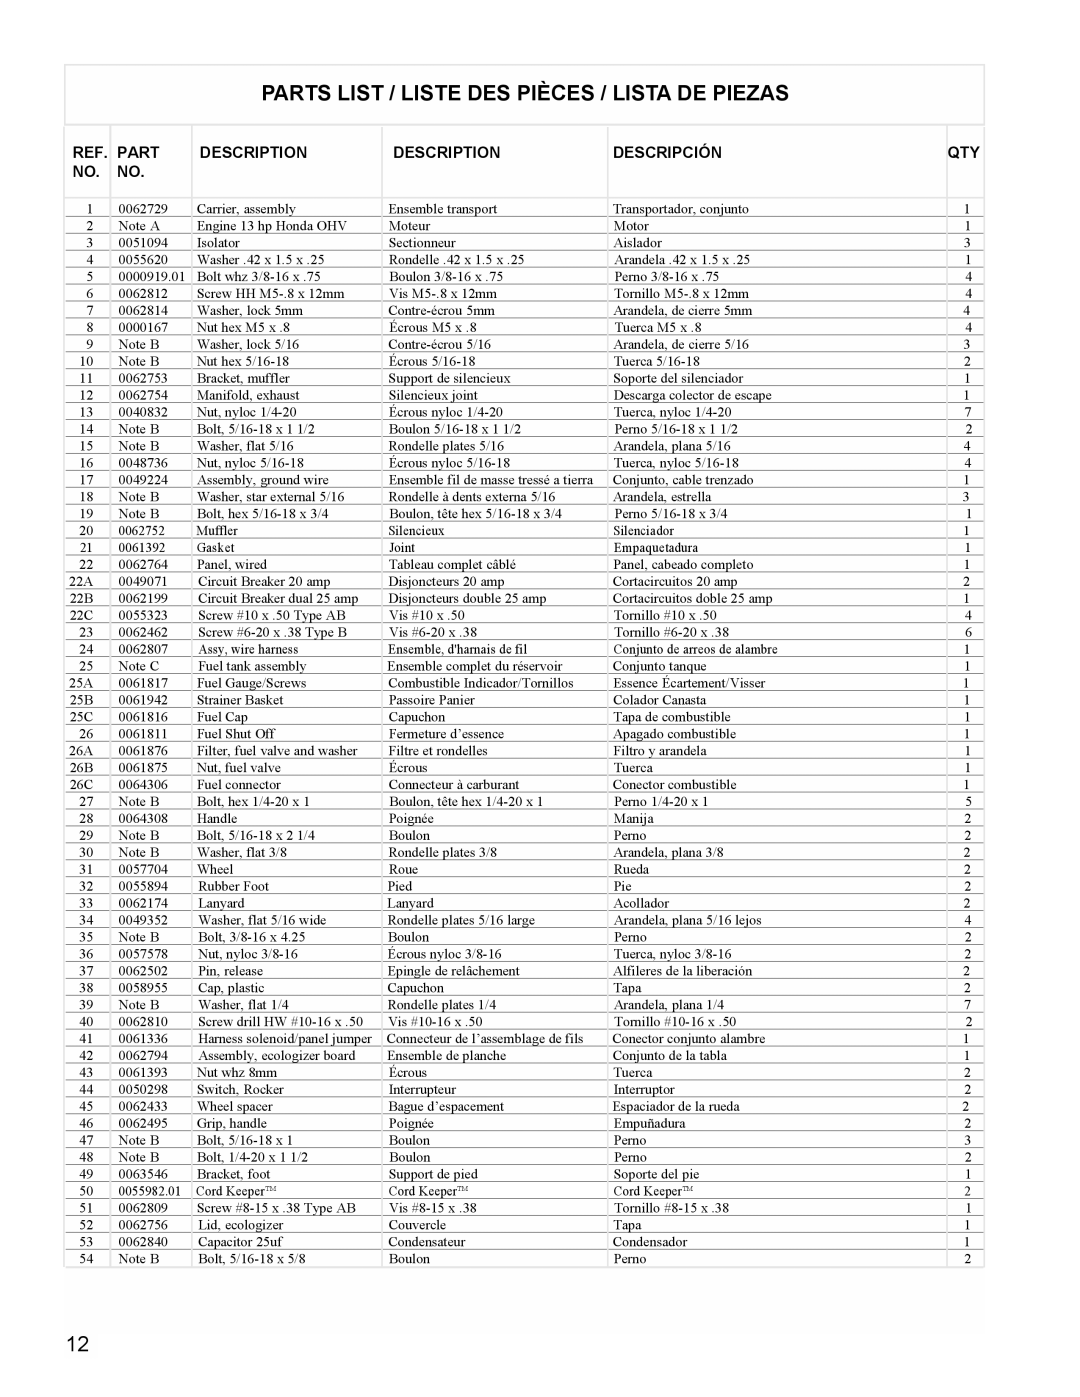 Powermate PM0605000 manual Parts List / Liste Des Pièces / Lista De Piezas, Description, Descripción 